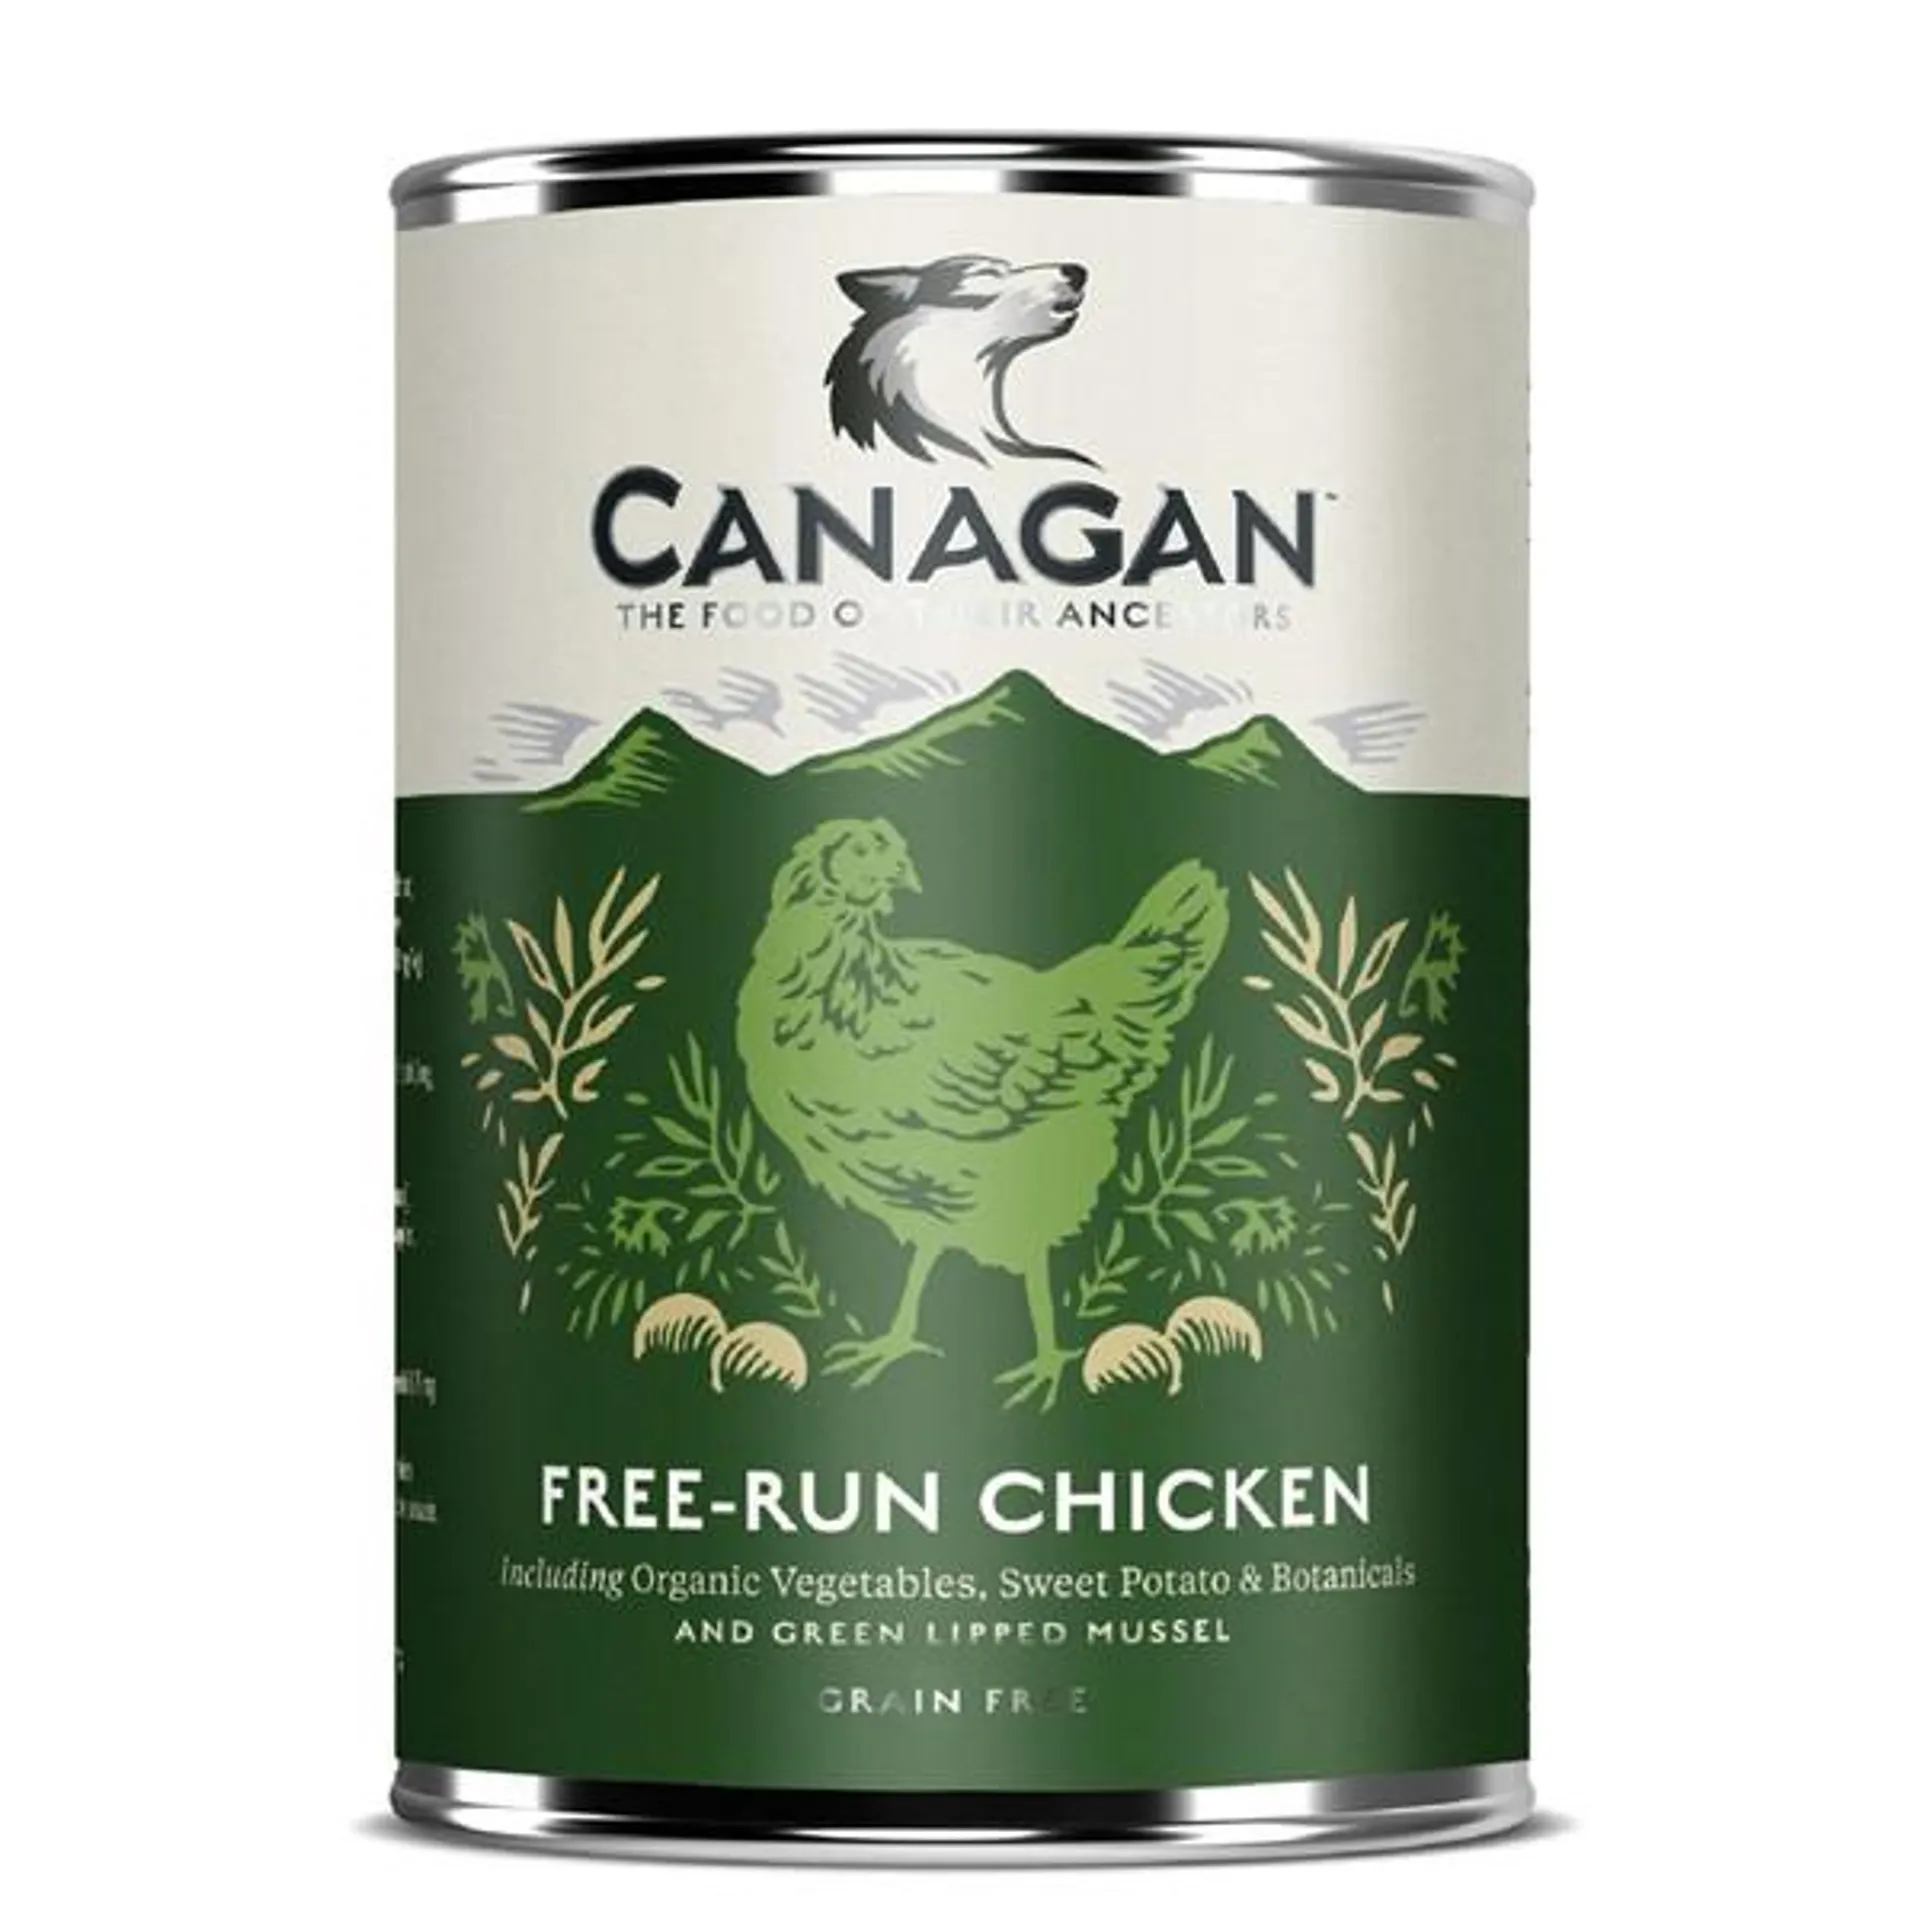 CANAGAN Piletina iz slobodnog uzgoja s organskim povrćem, 400g